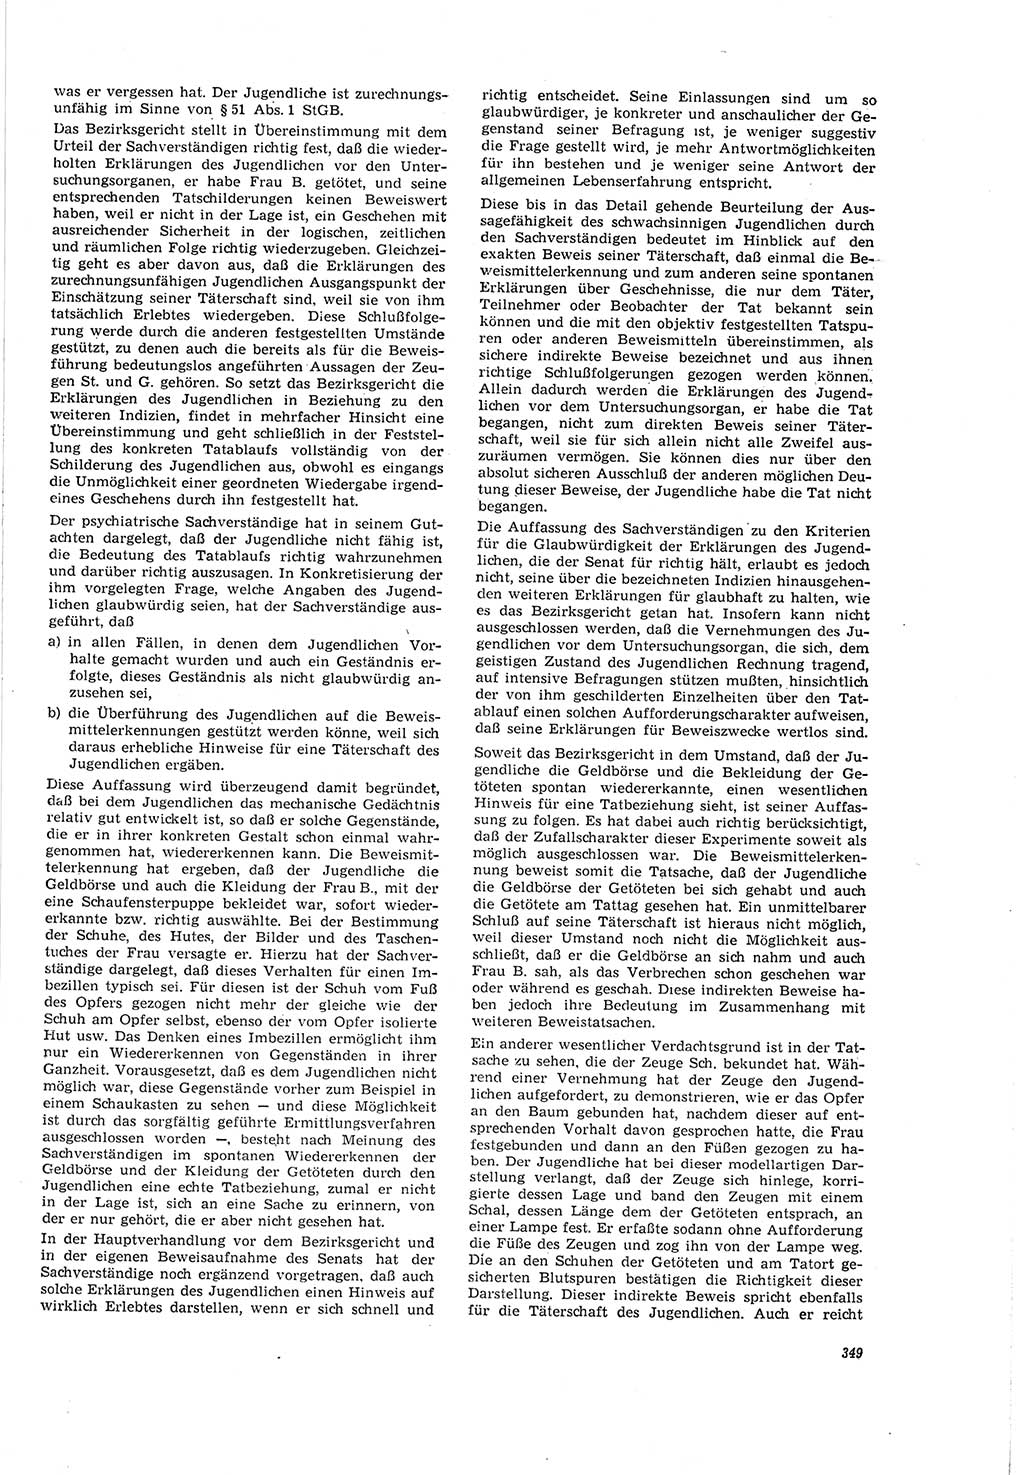 Neue Justiz (NJ), Zeitschrift für Recht und Rechtswissenschaft [Deutsche Demokratische Republik (DDR)], 20. Jahrgang 1966, Seite 349 (NJ DDR 1966, S. 349)